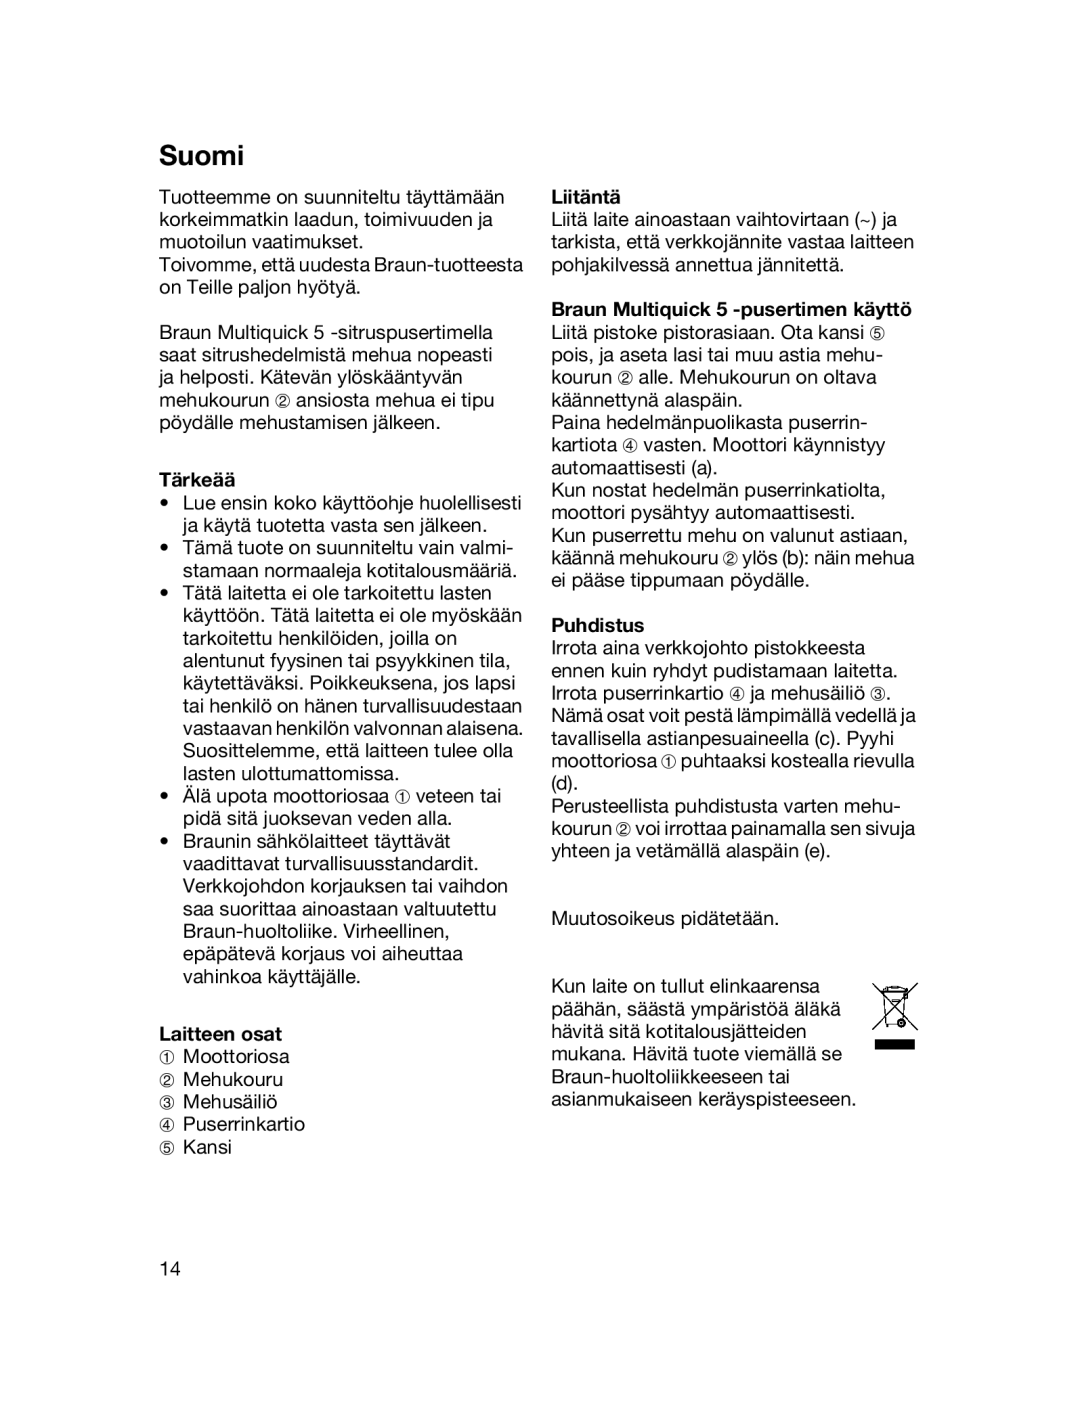 Braun MPZ 22 manual Suomi, Tärkeää, Laitteen osat, Liitäntä, Puhdistus 